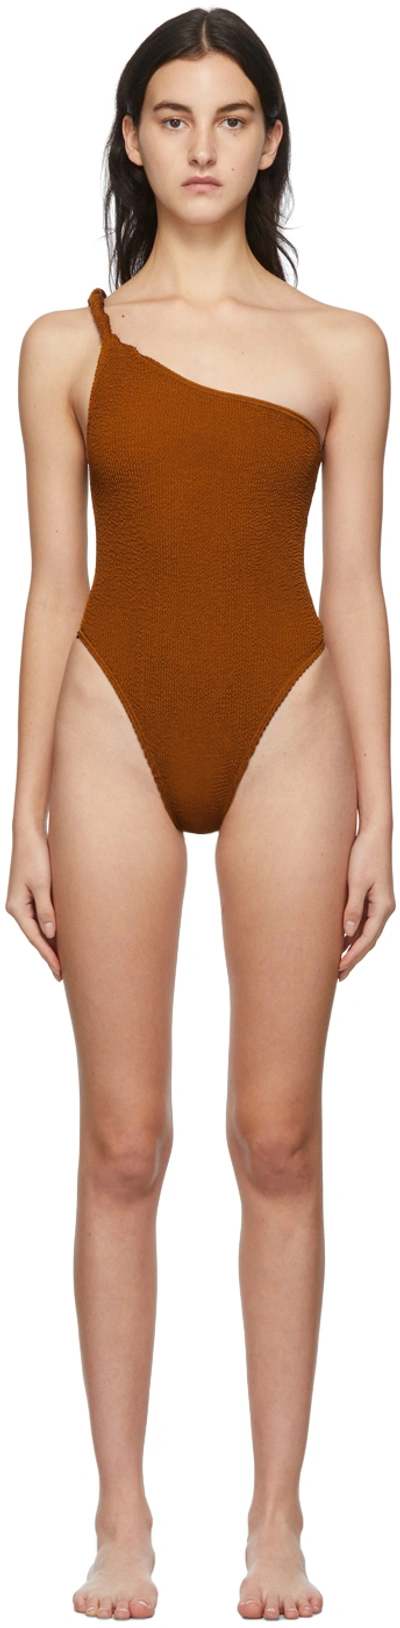 Bondeye Brown Kate Bock Edition Oscar One-piece Swimsuit In Cedar